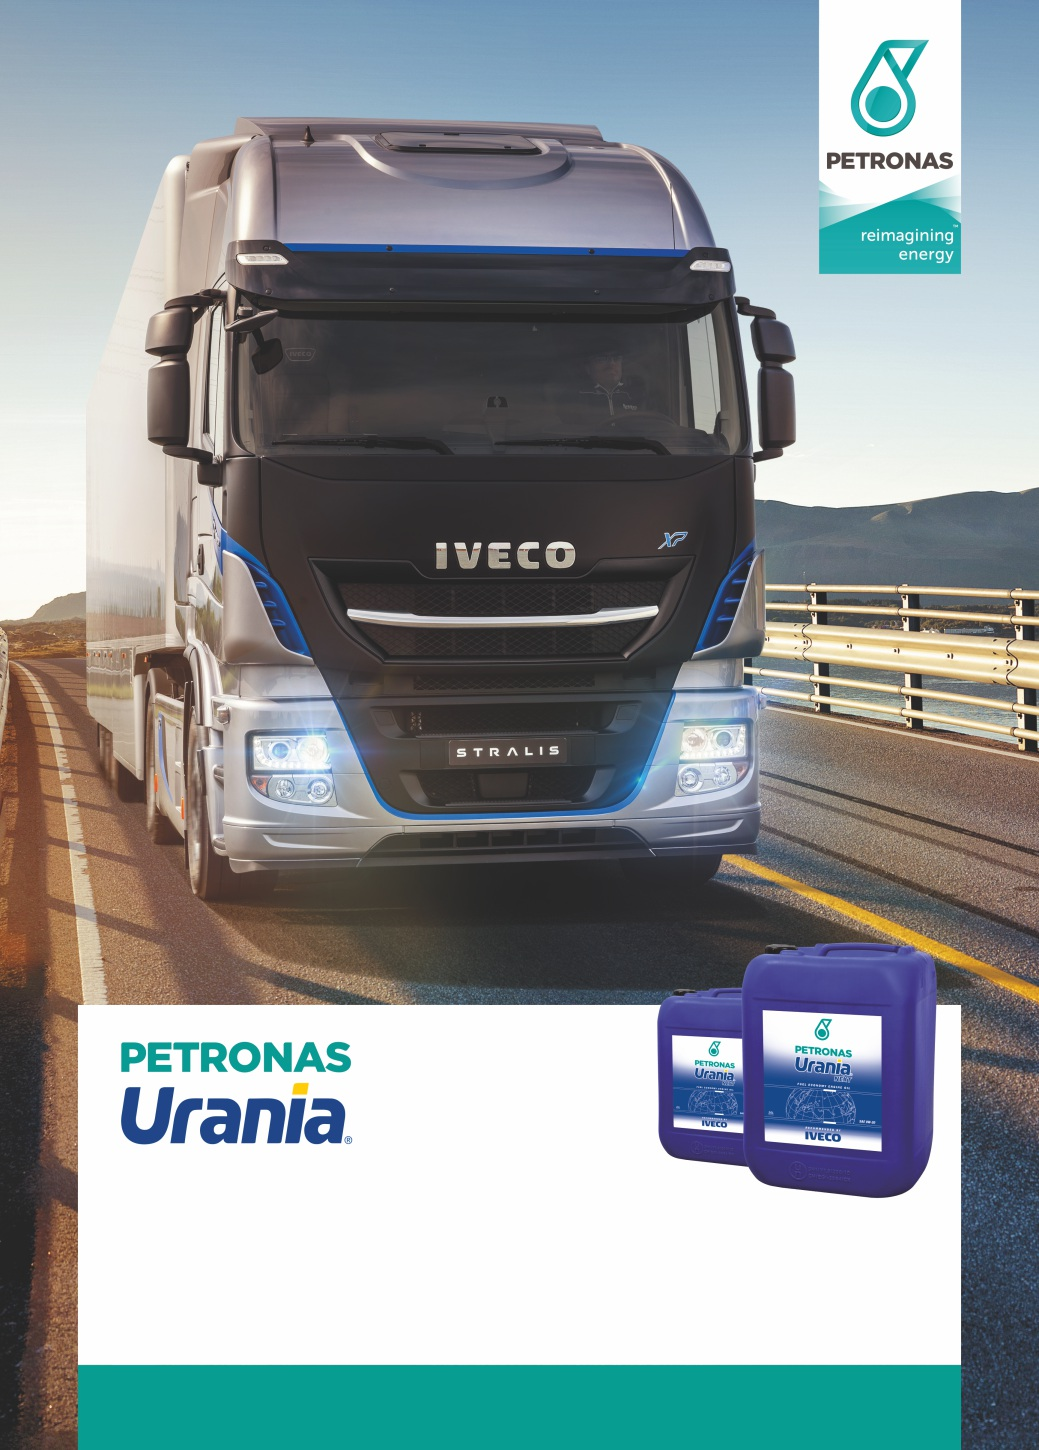 Nejlepší motorový olej vyvinutý společností PETRONAS Lubricants pro IVECO STRALIS je PETRONAS URANIA NEXT. URANIA NEXT je unikátní 0W-20 plně syntetický olej určený pro extrémní úsporu paliva.